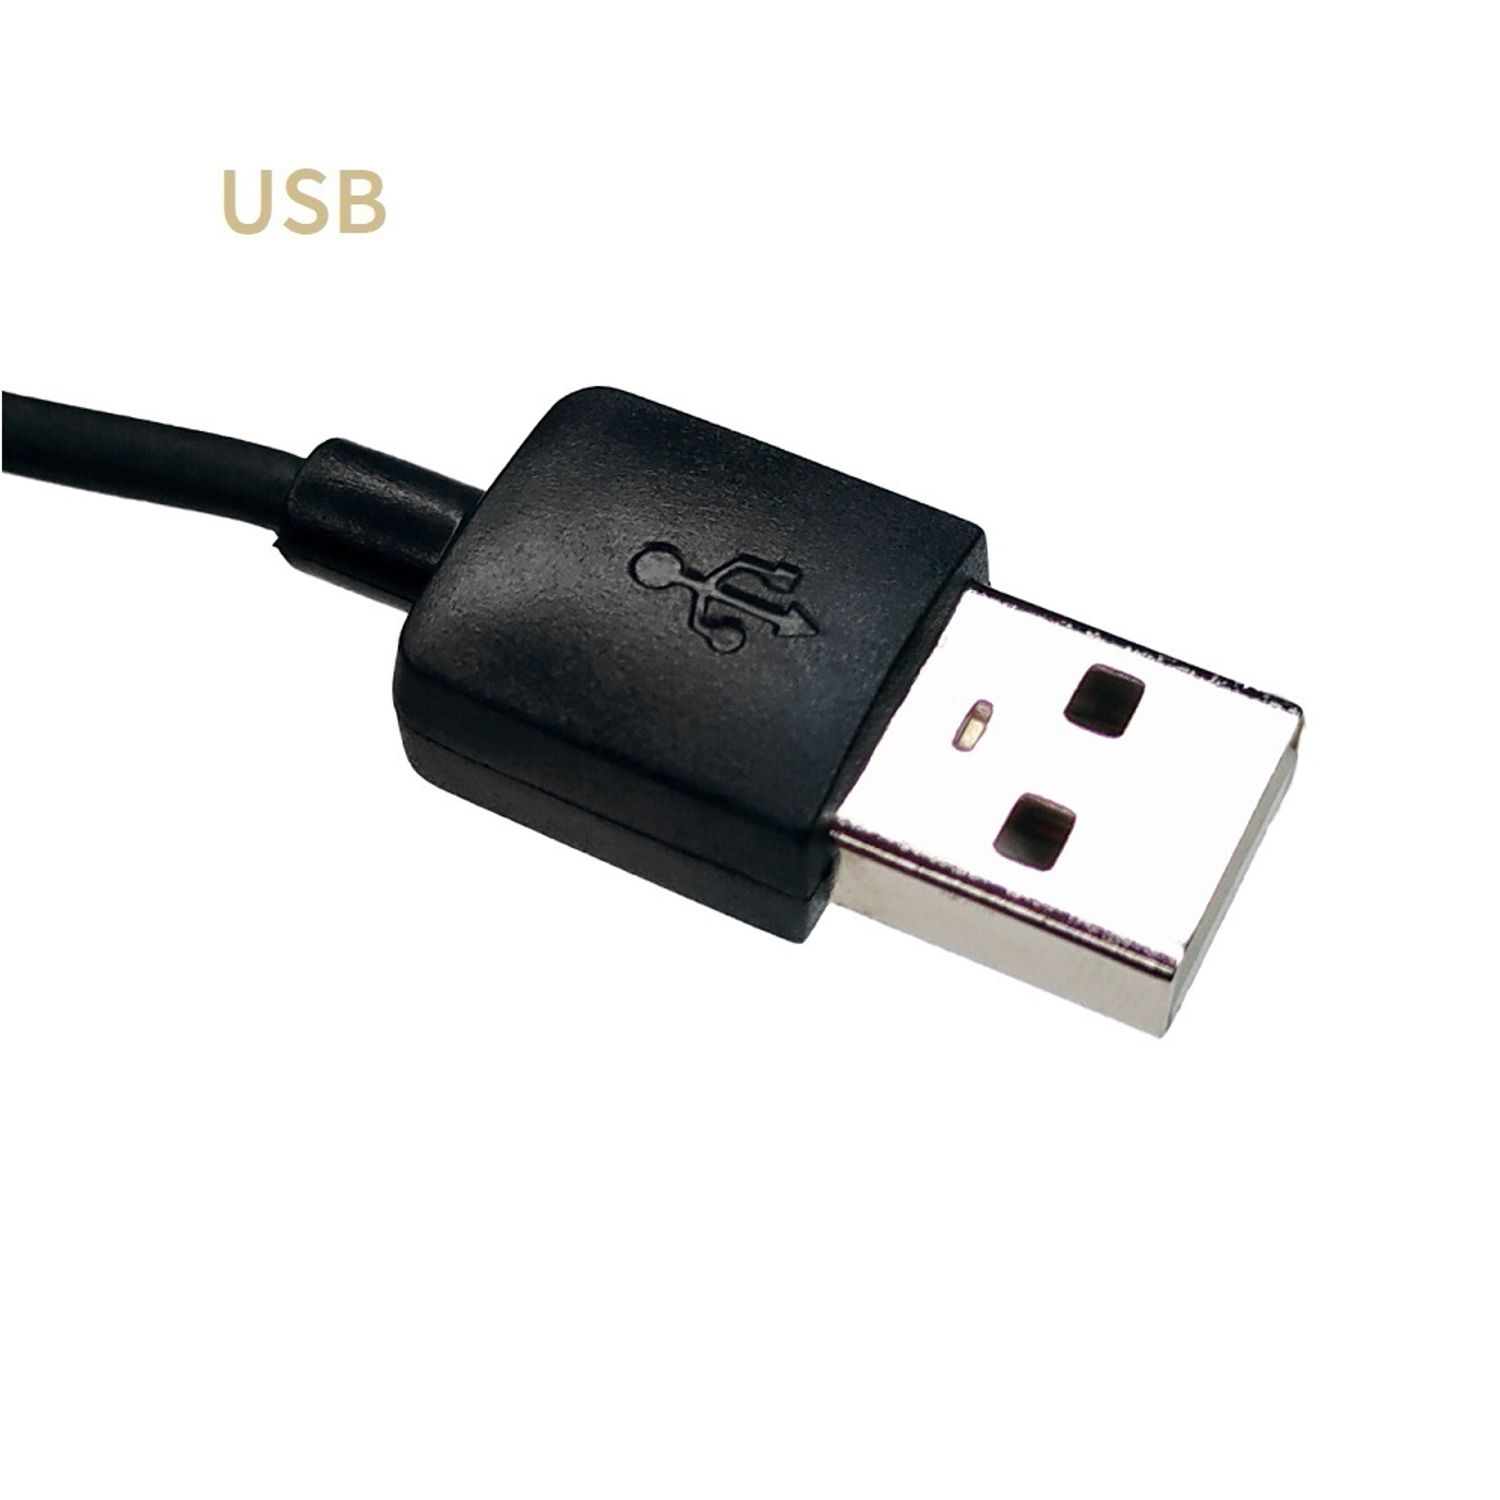 GEQUDIO USB Kabel kompatibel mit für Mac PC Zubehör Headset Schwarz und